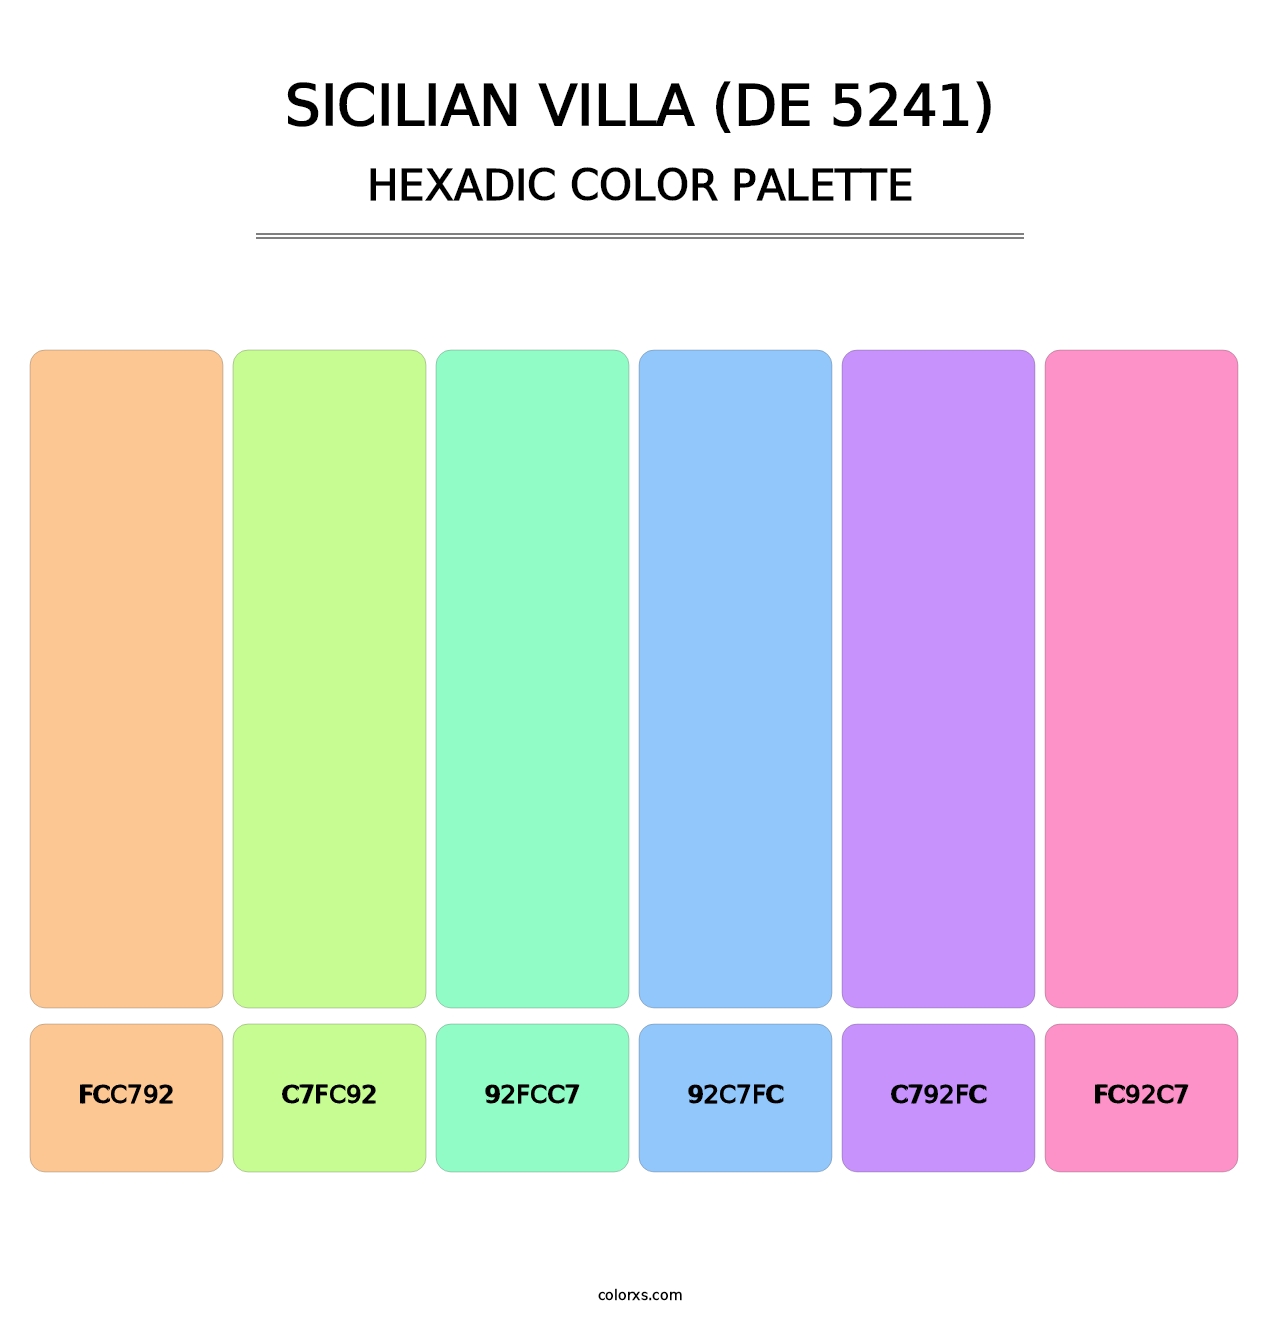 Sicilian Villa (DE 5241) - Hexadic Color Palette